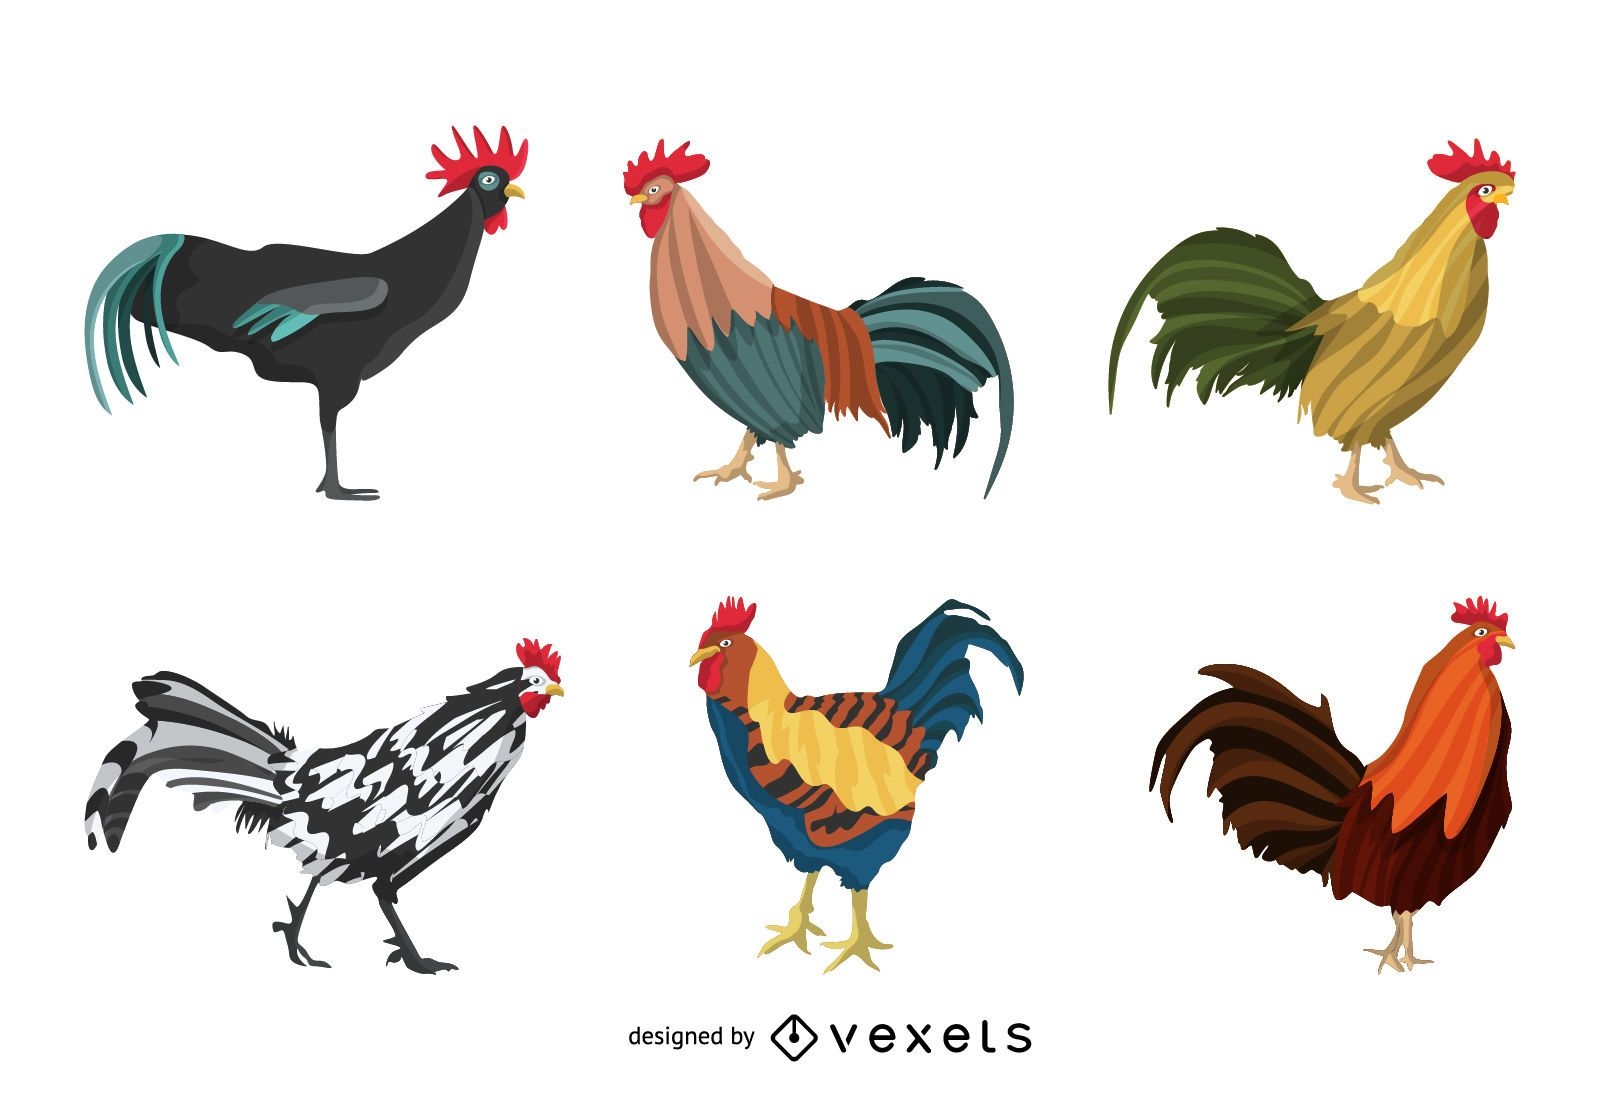 Rooster illustration set